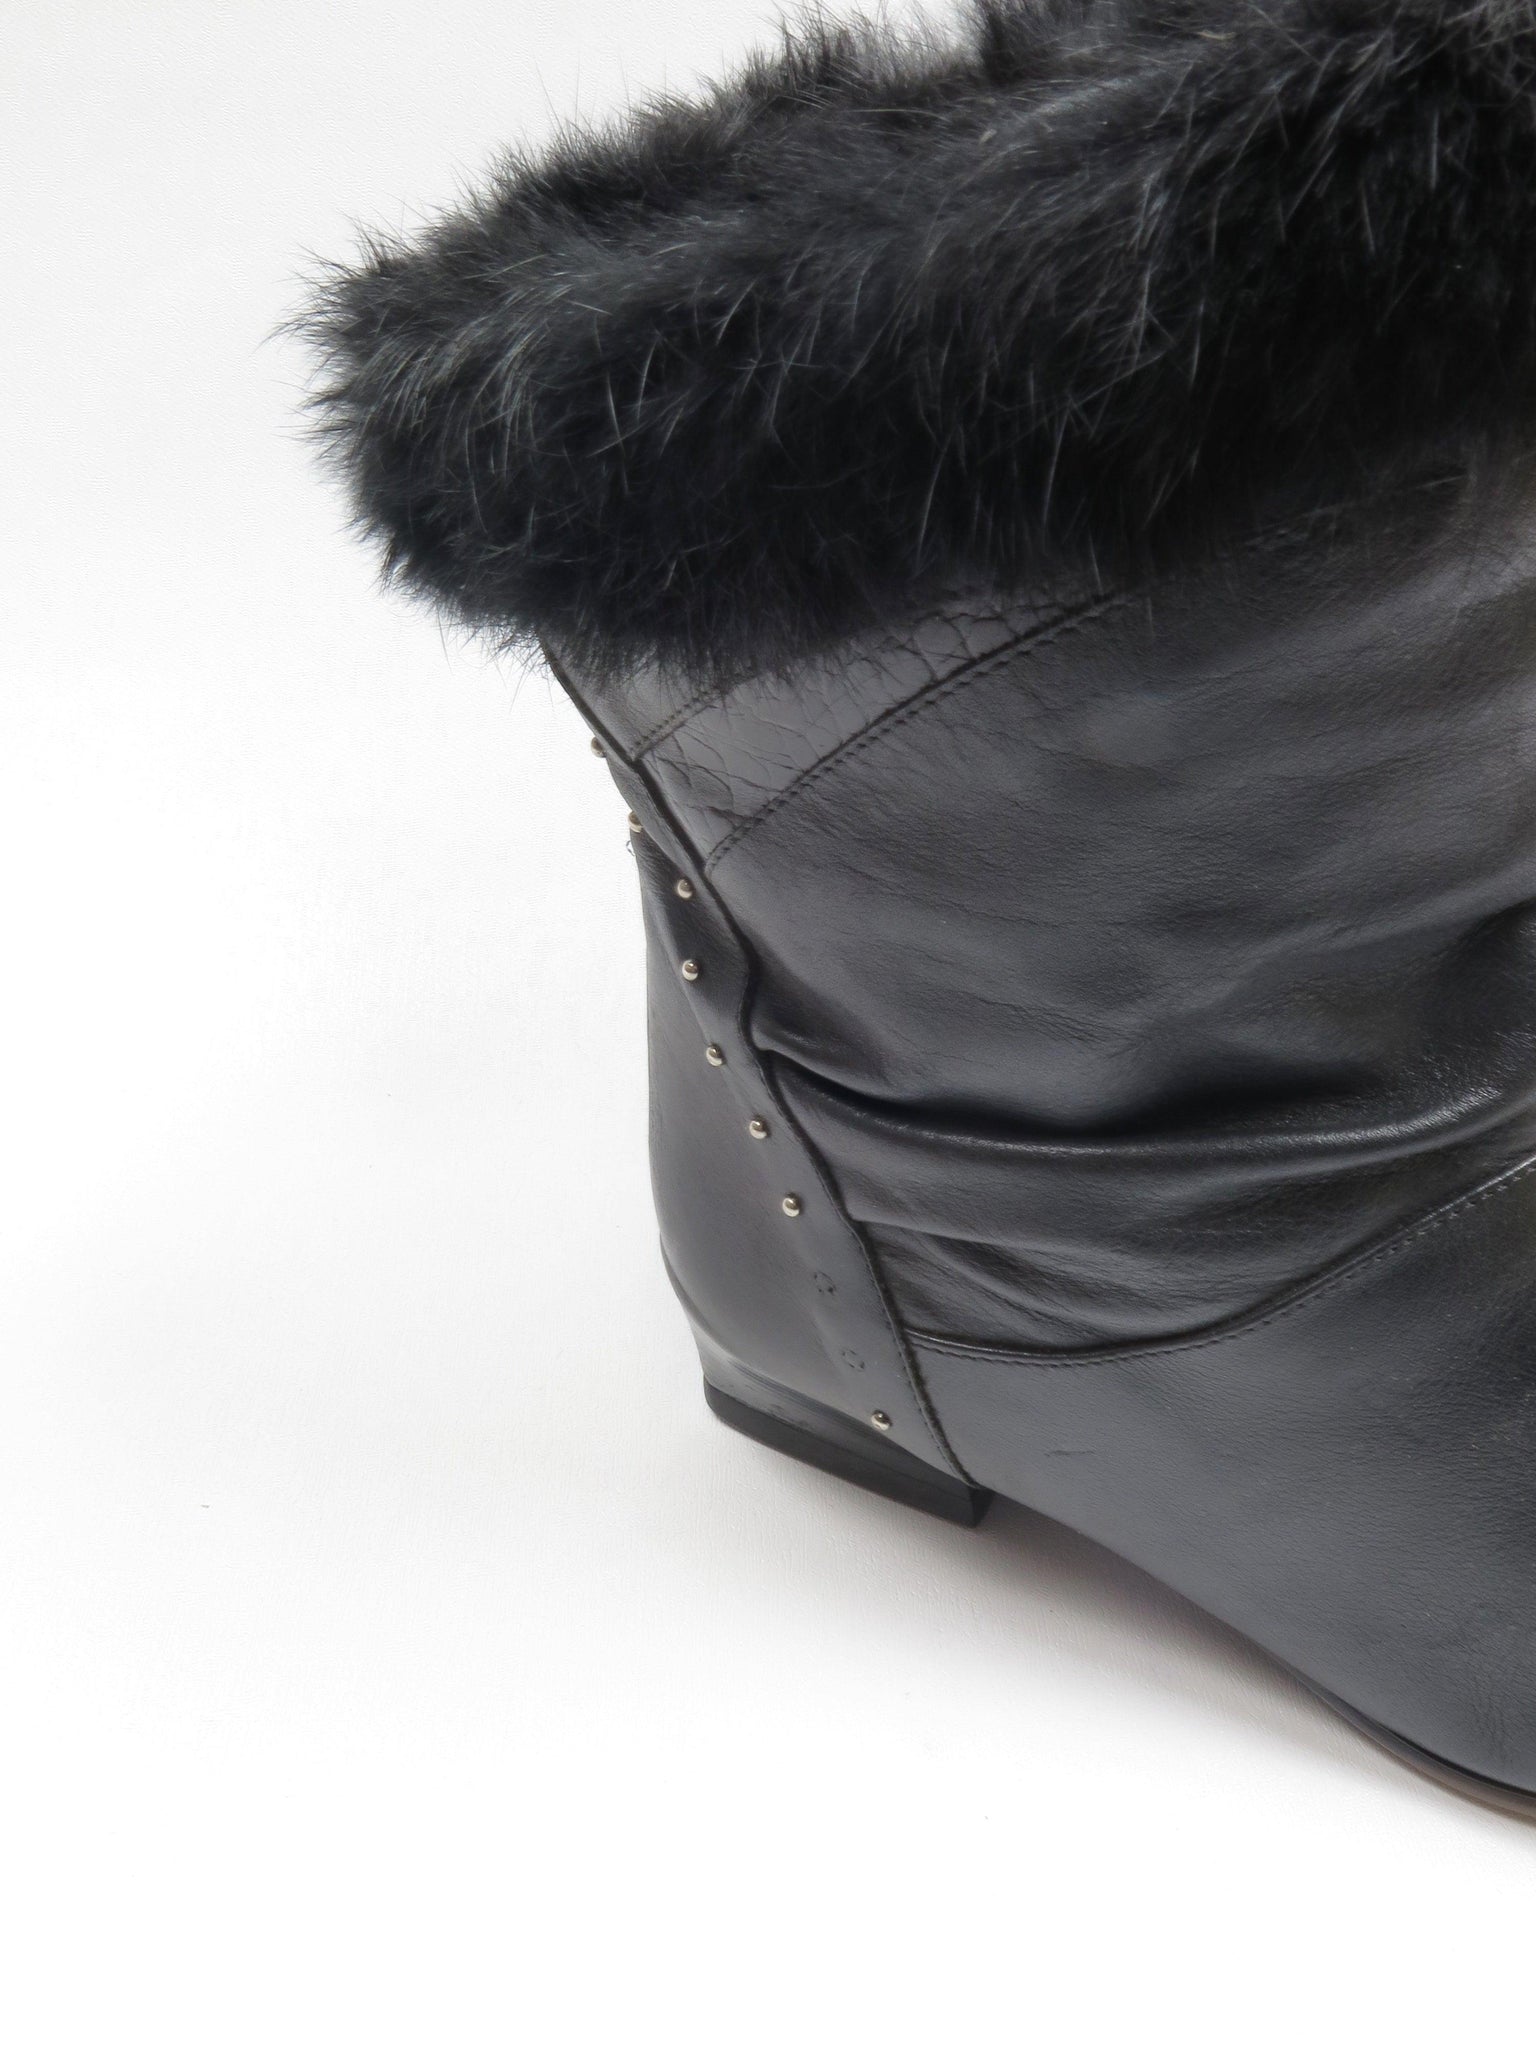 Black Short Vintage Leather Boots 7/40 - The Harlequin